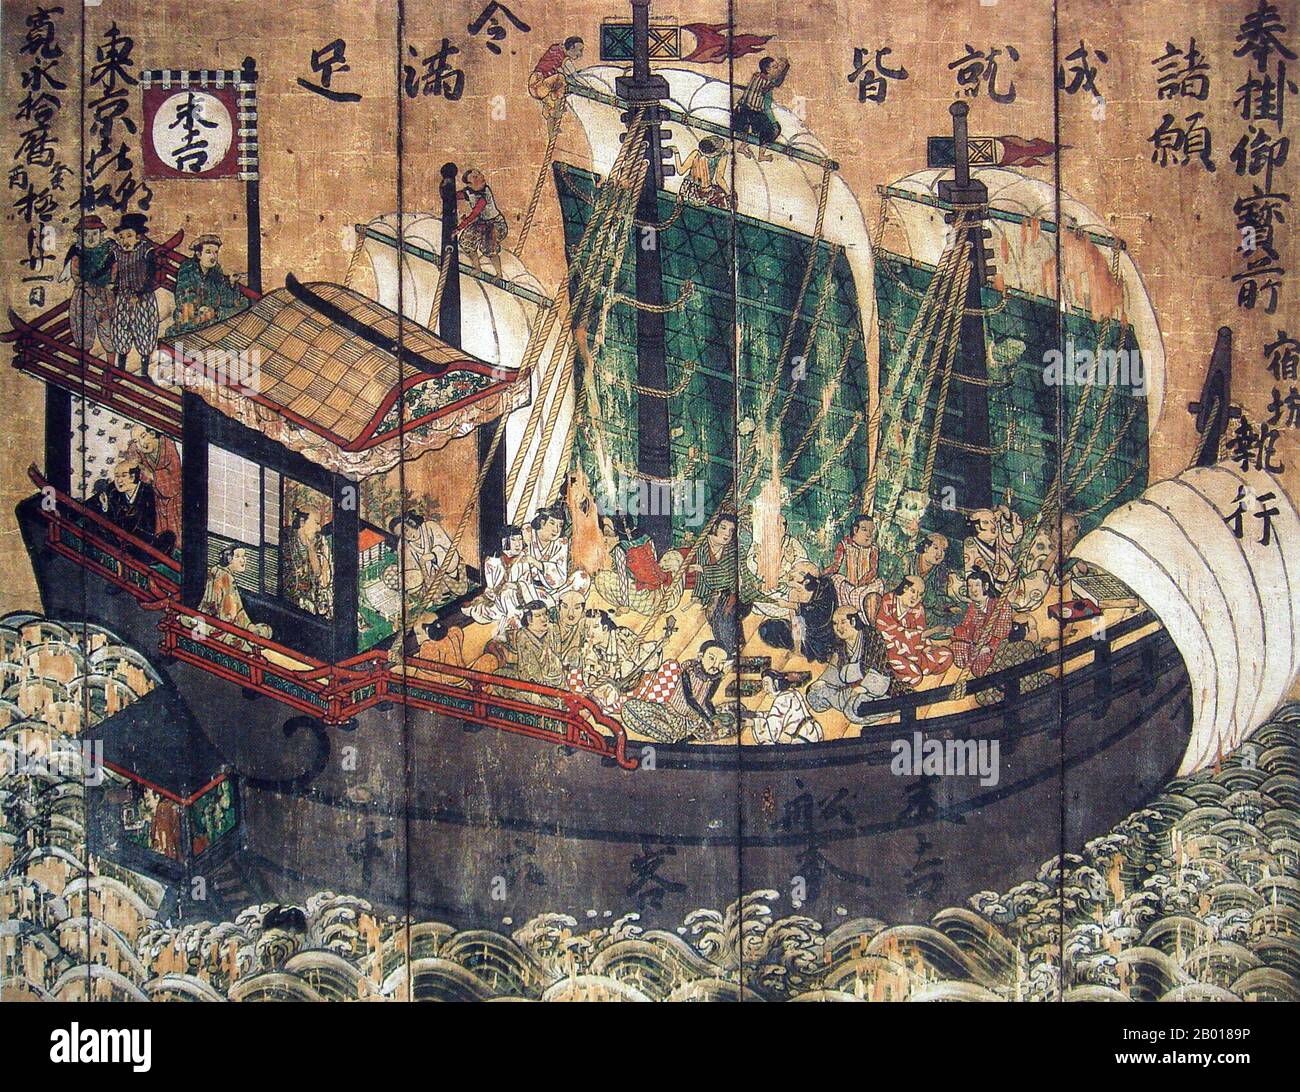 Japon: Navire Sueyoshi Red Seal avec pilotes et marins étrangers. Une peinture de plaque de bois du temple Kiyomizu-dera, Kyoto, c. 1633. Shuinsen, ou «navires de Sceau rouge», étaient des navires marchands japonais à voile à destination des ports d'Asie du Sud-est avec un brevet scellé à rouge délivré par le shogunat Tokugawa au début de la première moitié du 17th siècle. Entre 1600 et 1635, plus de 350 navires japonais sont allés à l'étranger dans le cadre de ce système de permis. Les marchands japonais exportaient principalement de l'argent, des diamants, du cuivre, des épées et d'autres objets, et importaient de la soie chinoise ainsi que certains produits d'Asie du Sud-est comme le sucre. Banque D'Images